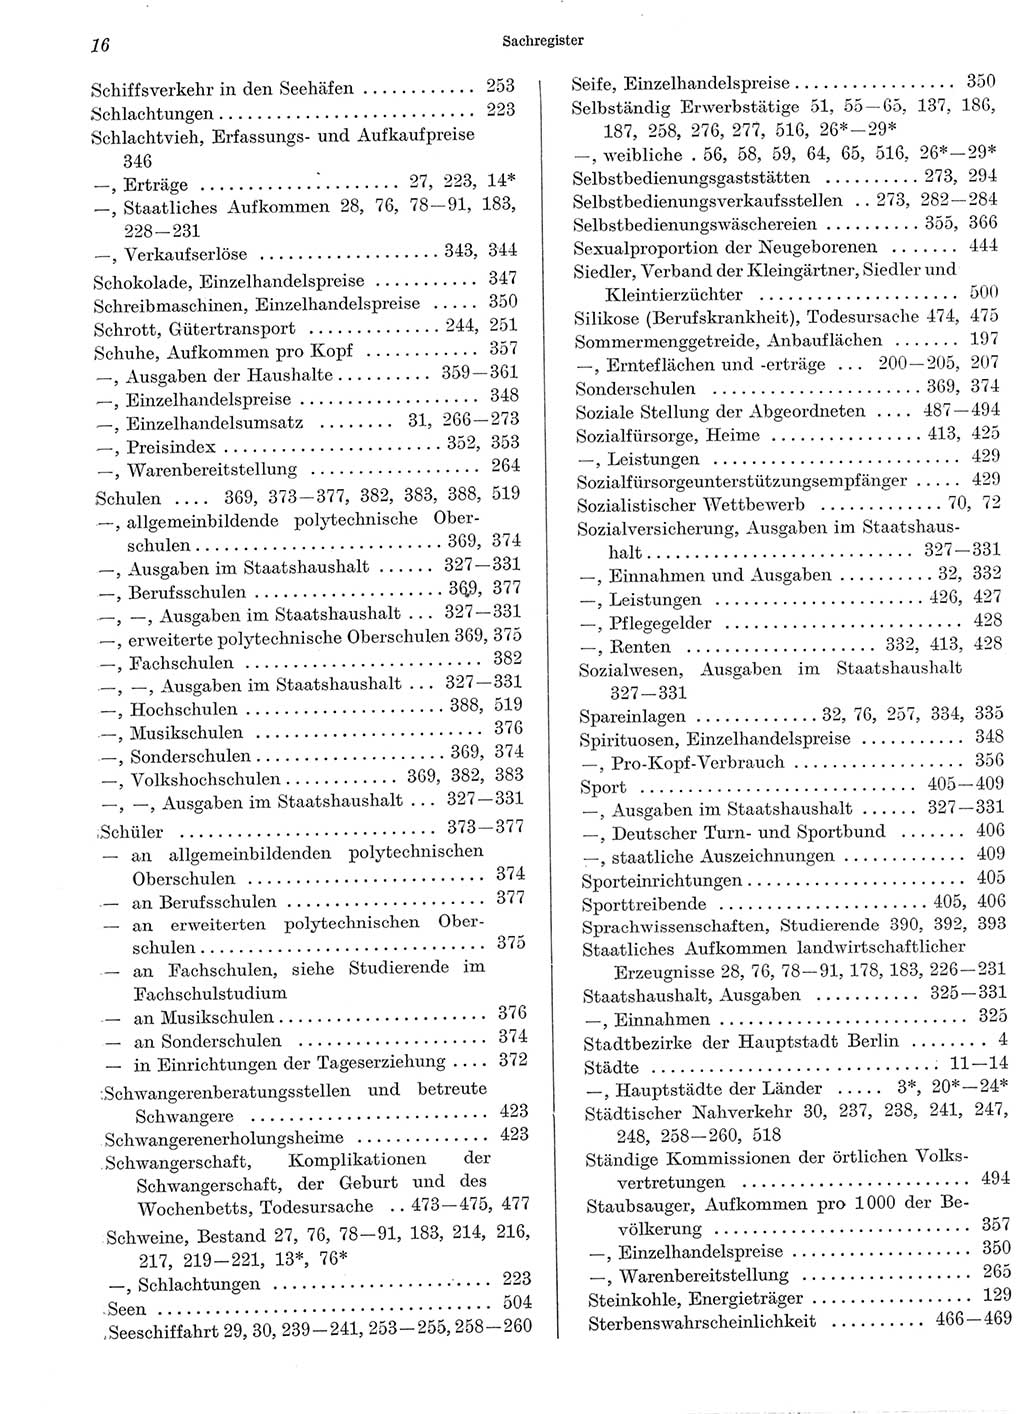 Statistisches Jahrbuch der Deutschen Demokratischen Republik (DDR) 1969, Seite 16 (Stat. Jb. DDR 1969, S. 16)